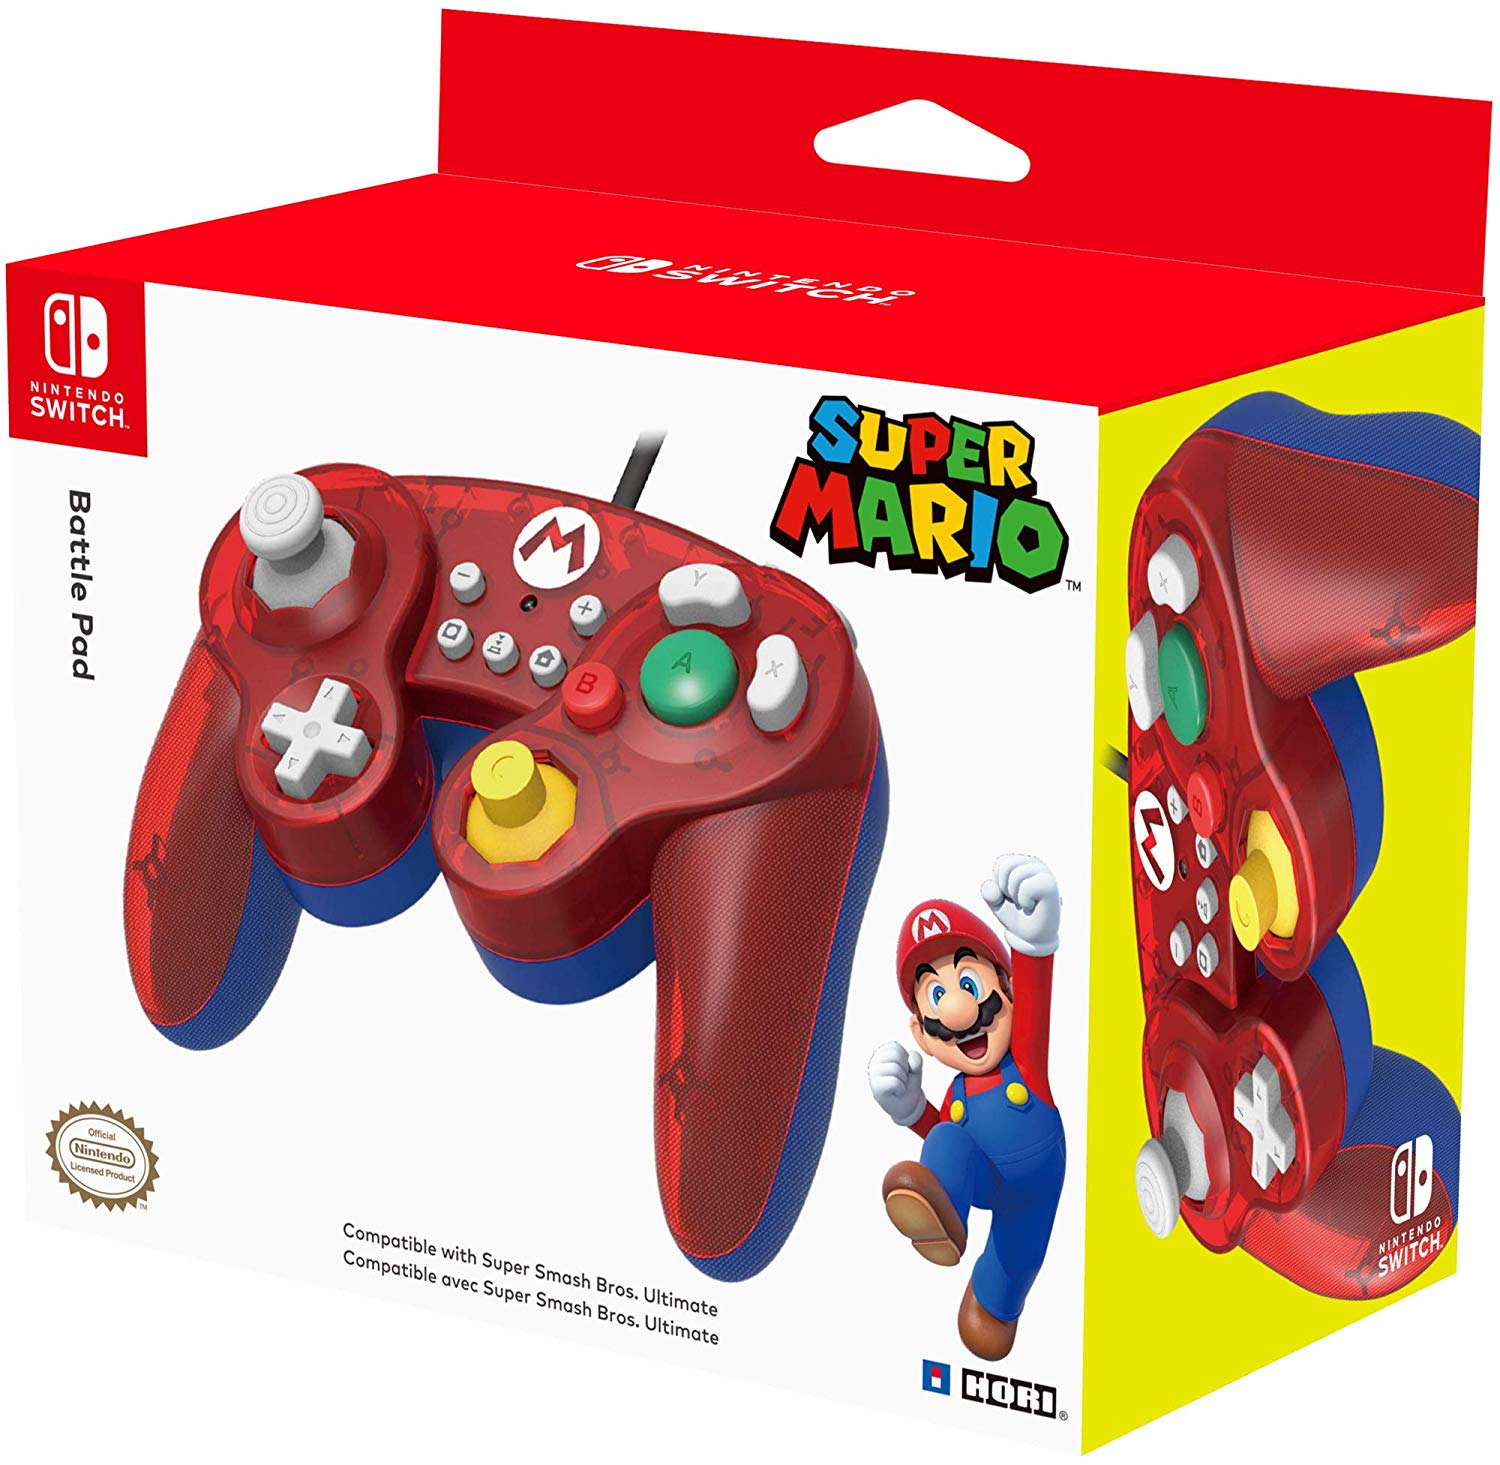 Super Smash Bros Gamepad - Mario